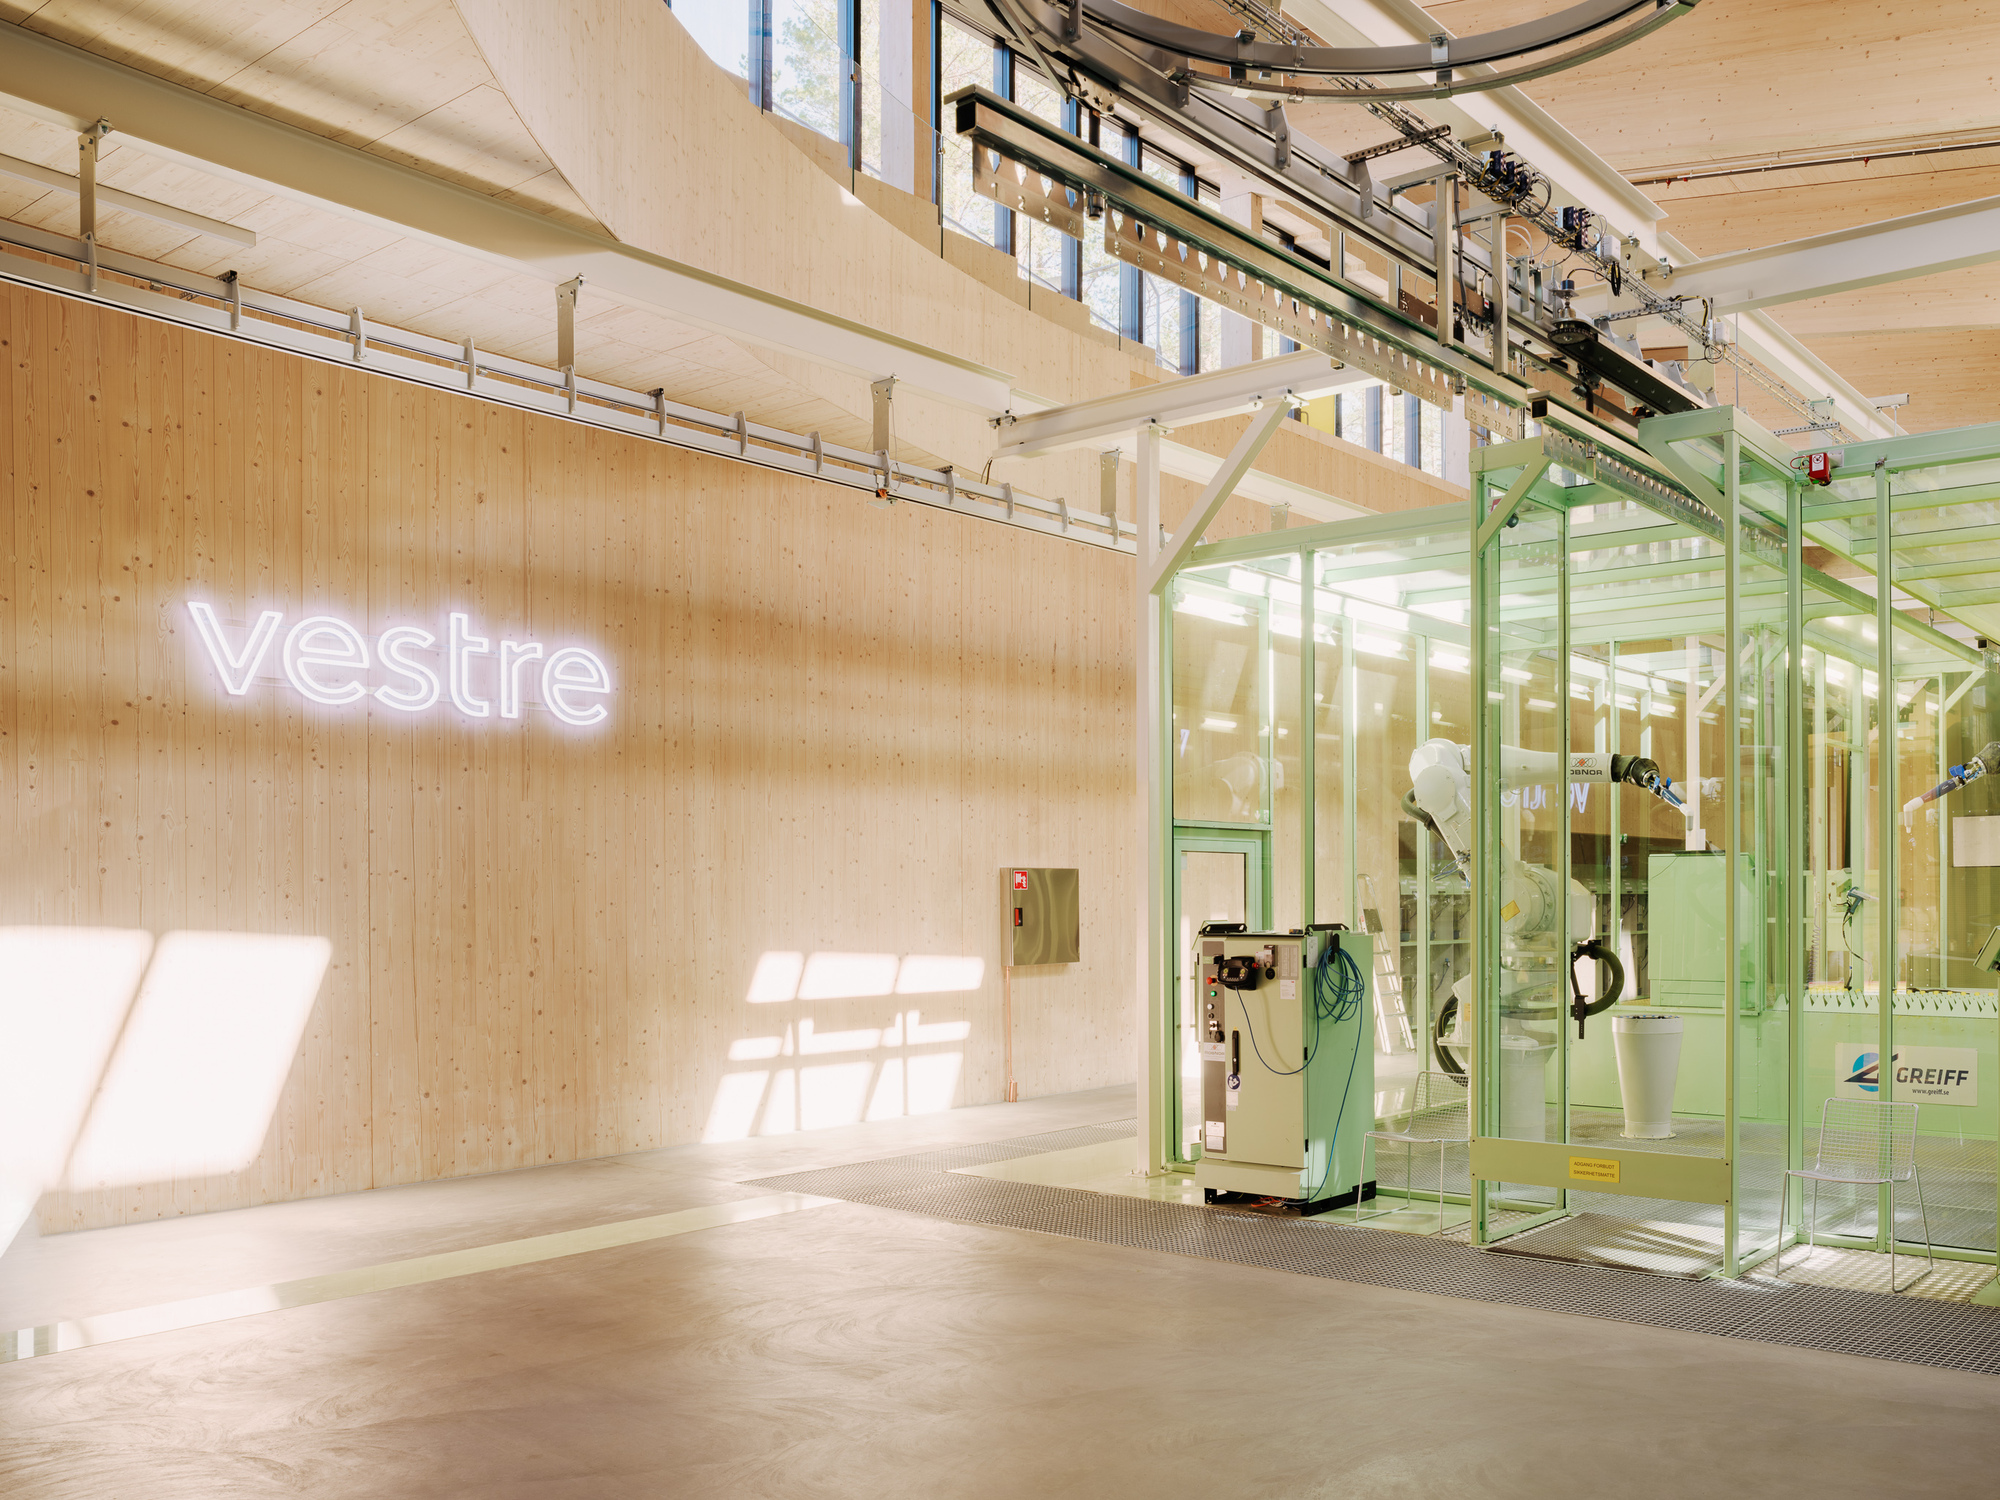 Vestre Furniture Factory Designed By BIG Architect Who Empasizes Nature's Sustainability